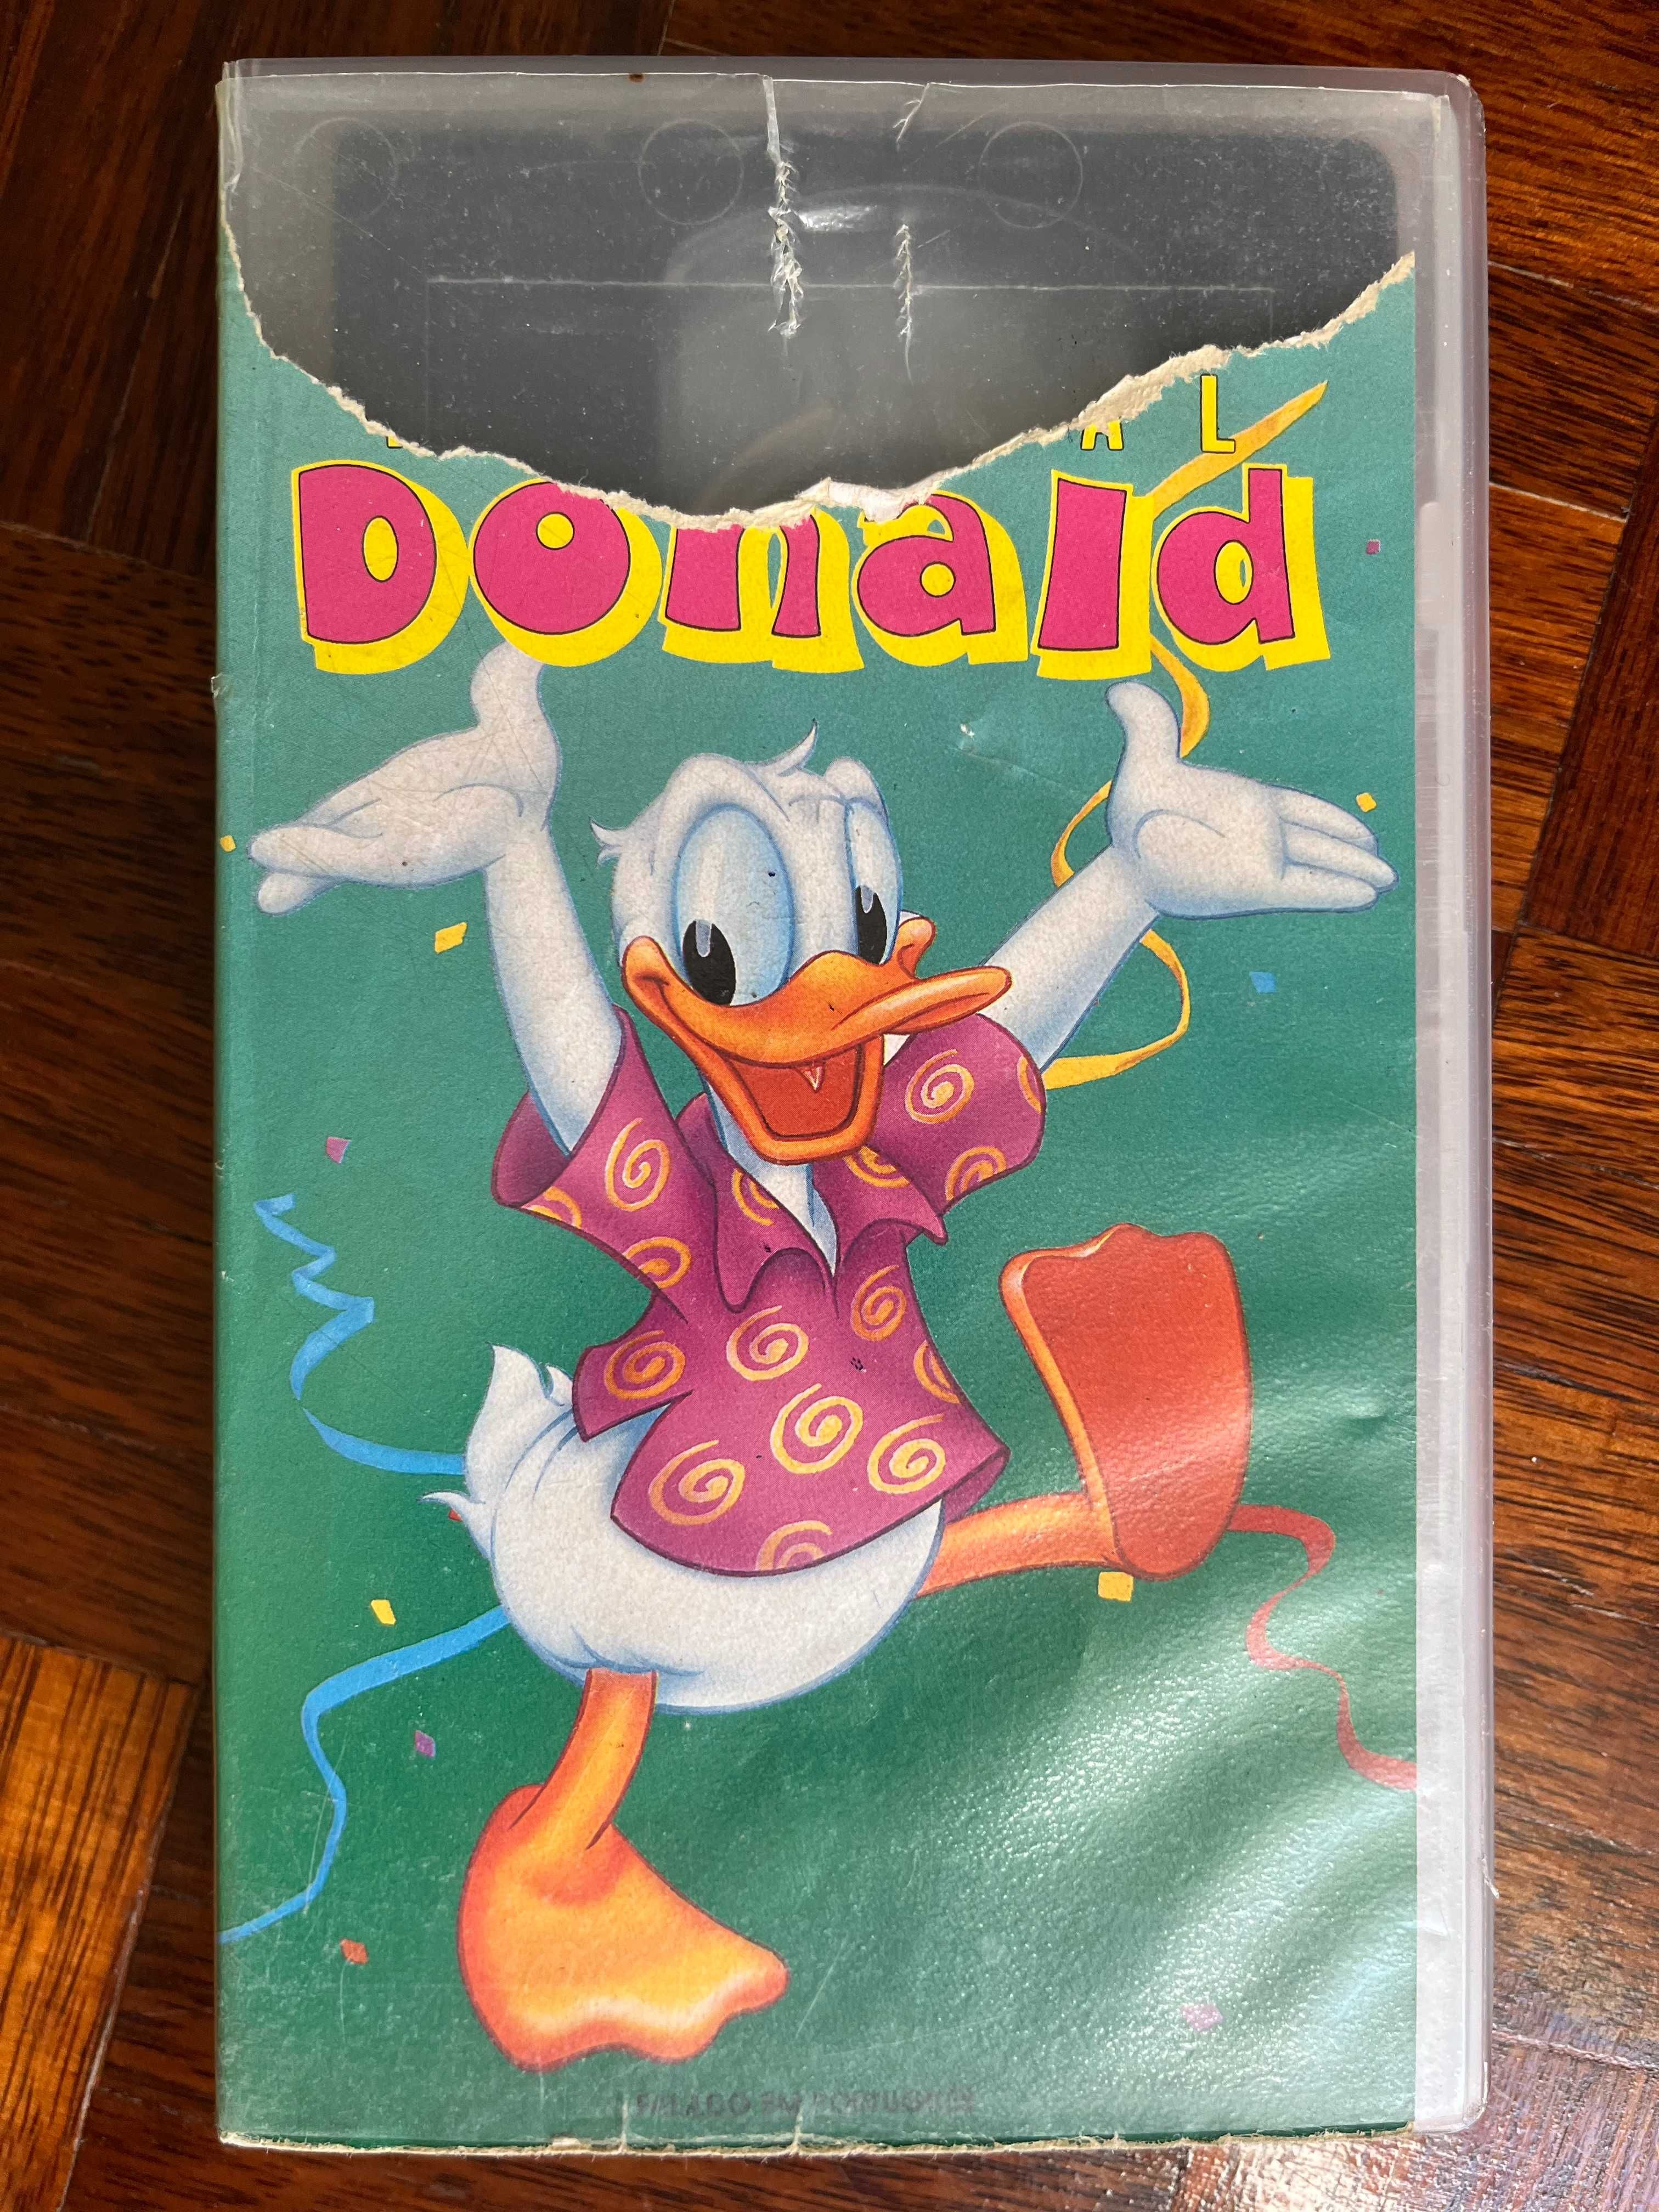 VHS Festival Disney Cartoon Classics (1990 - 96) DUB PT-BR